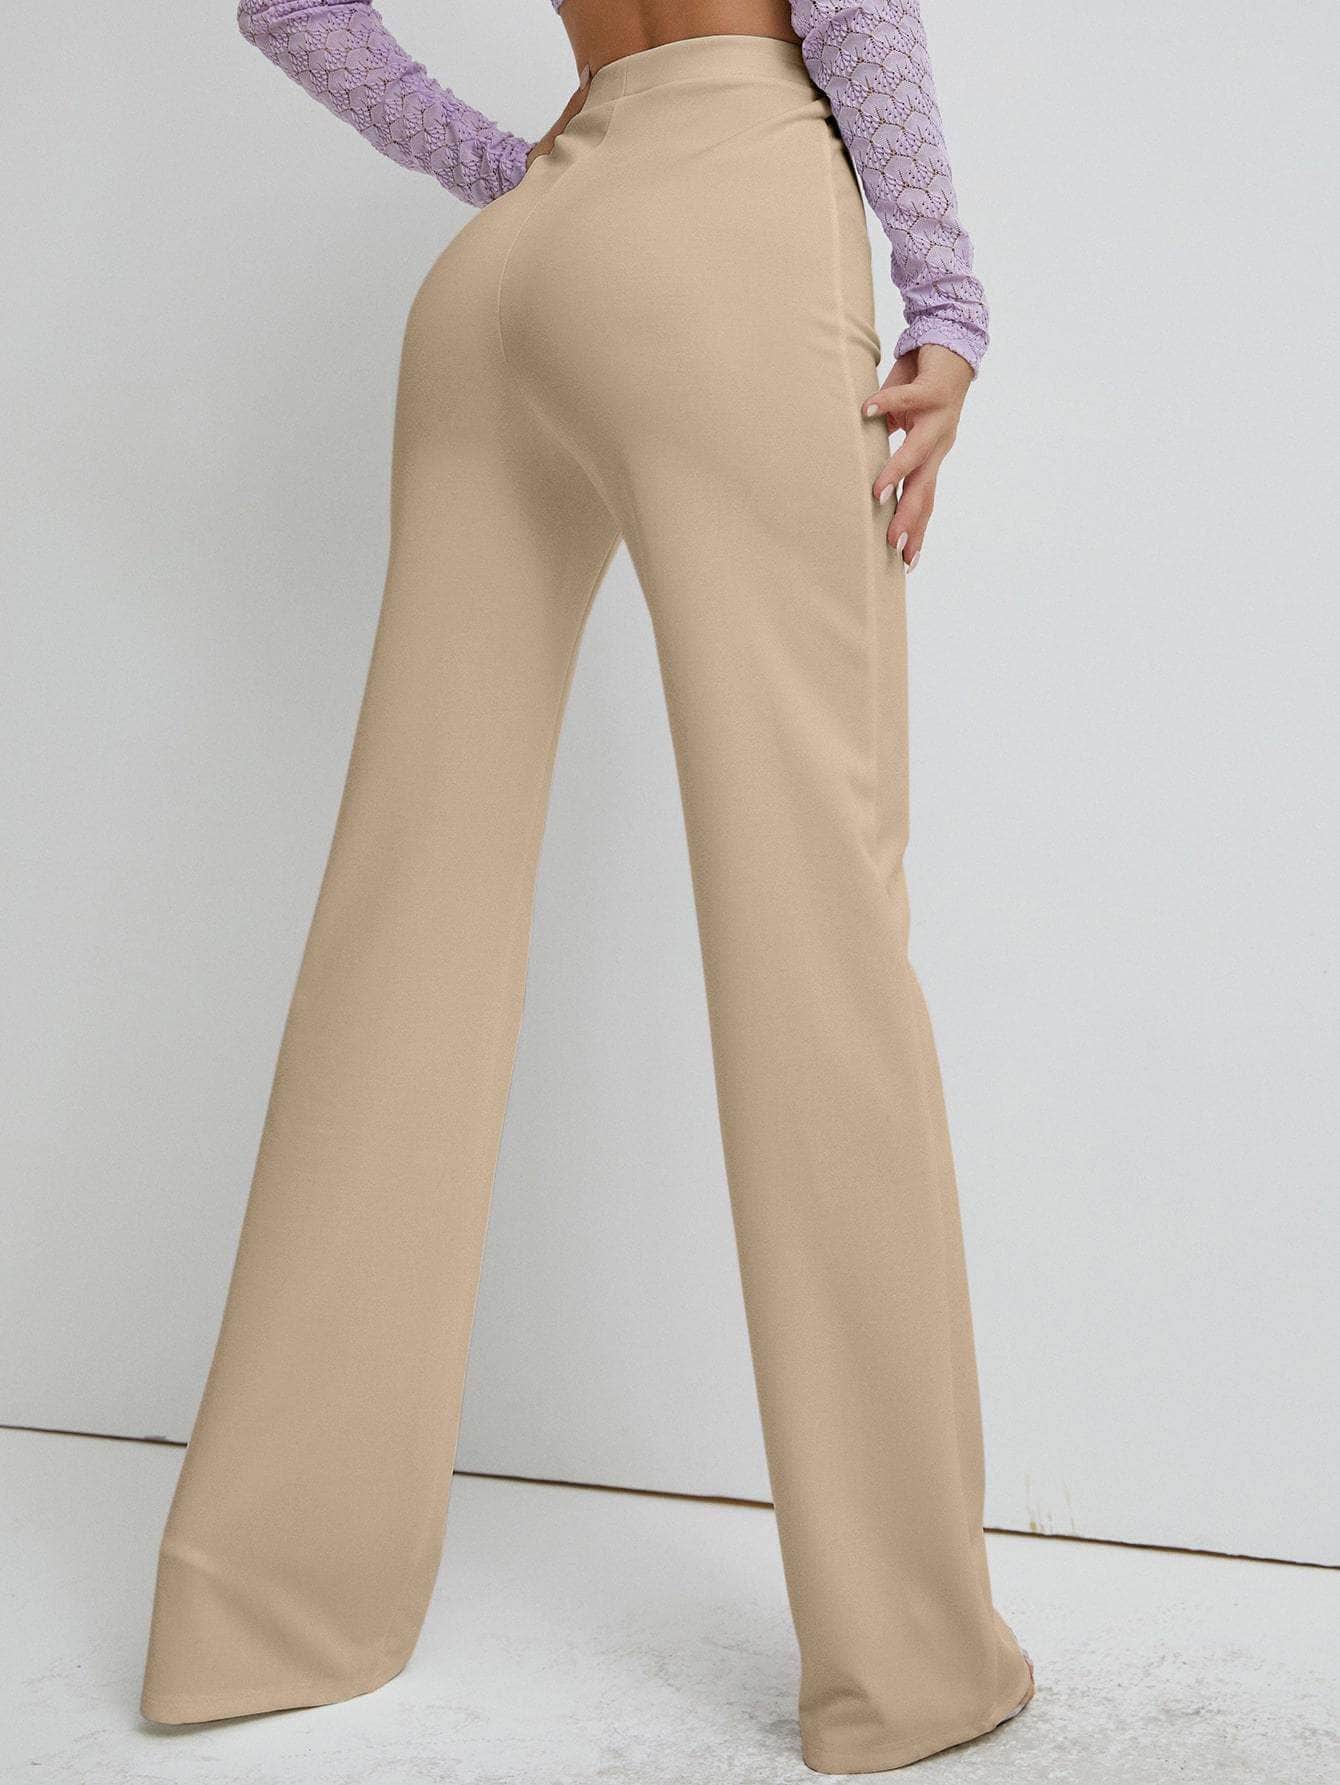 Muybonita.co Mujer/Pantalones/pantaloneselegantes3 Albaricoque / L Pantalones rectos unicolor de cintura alta